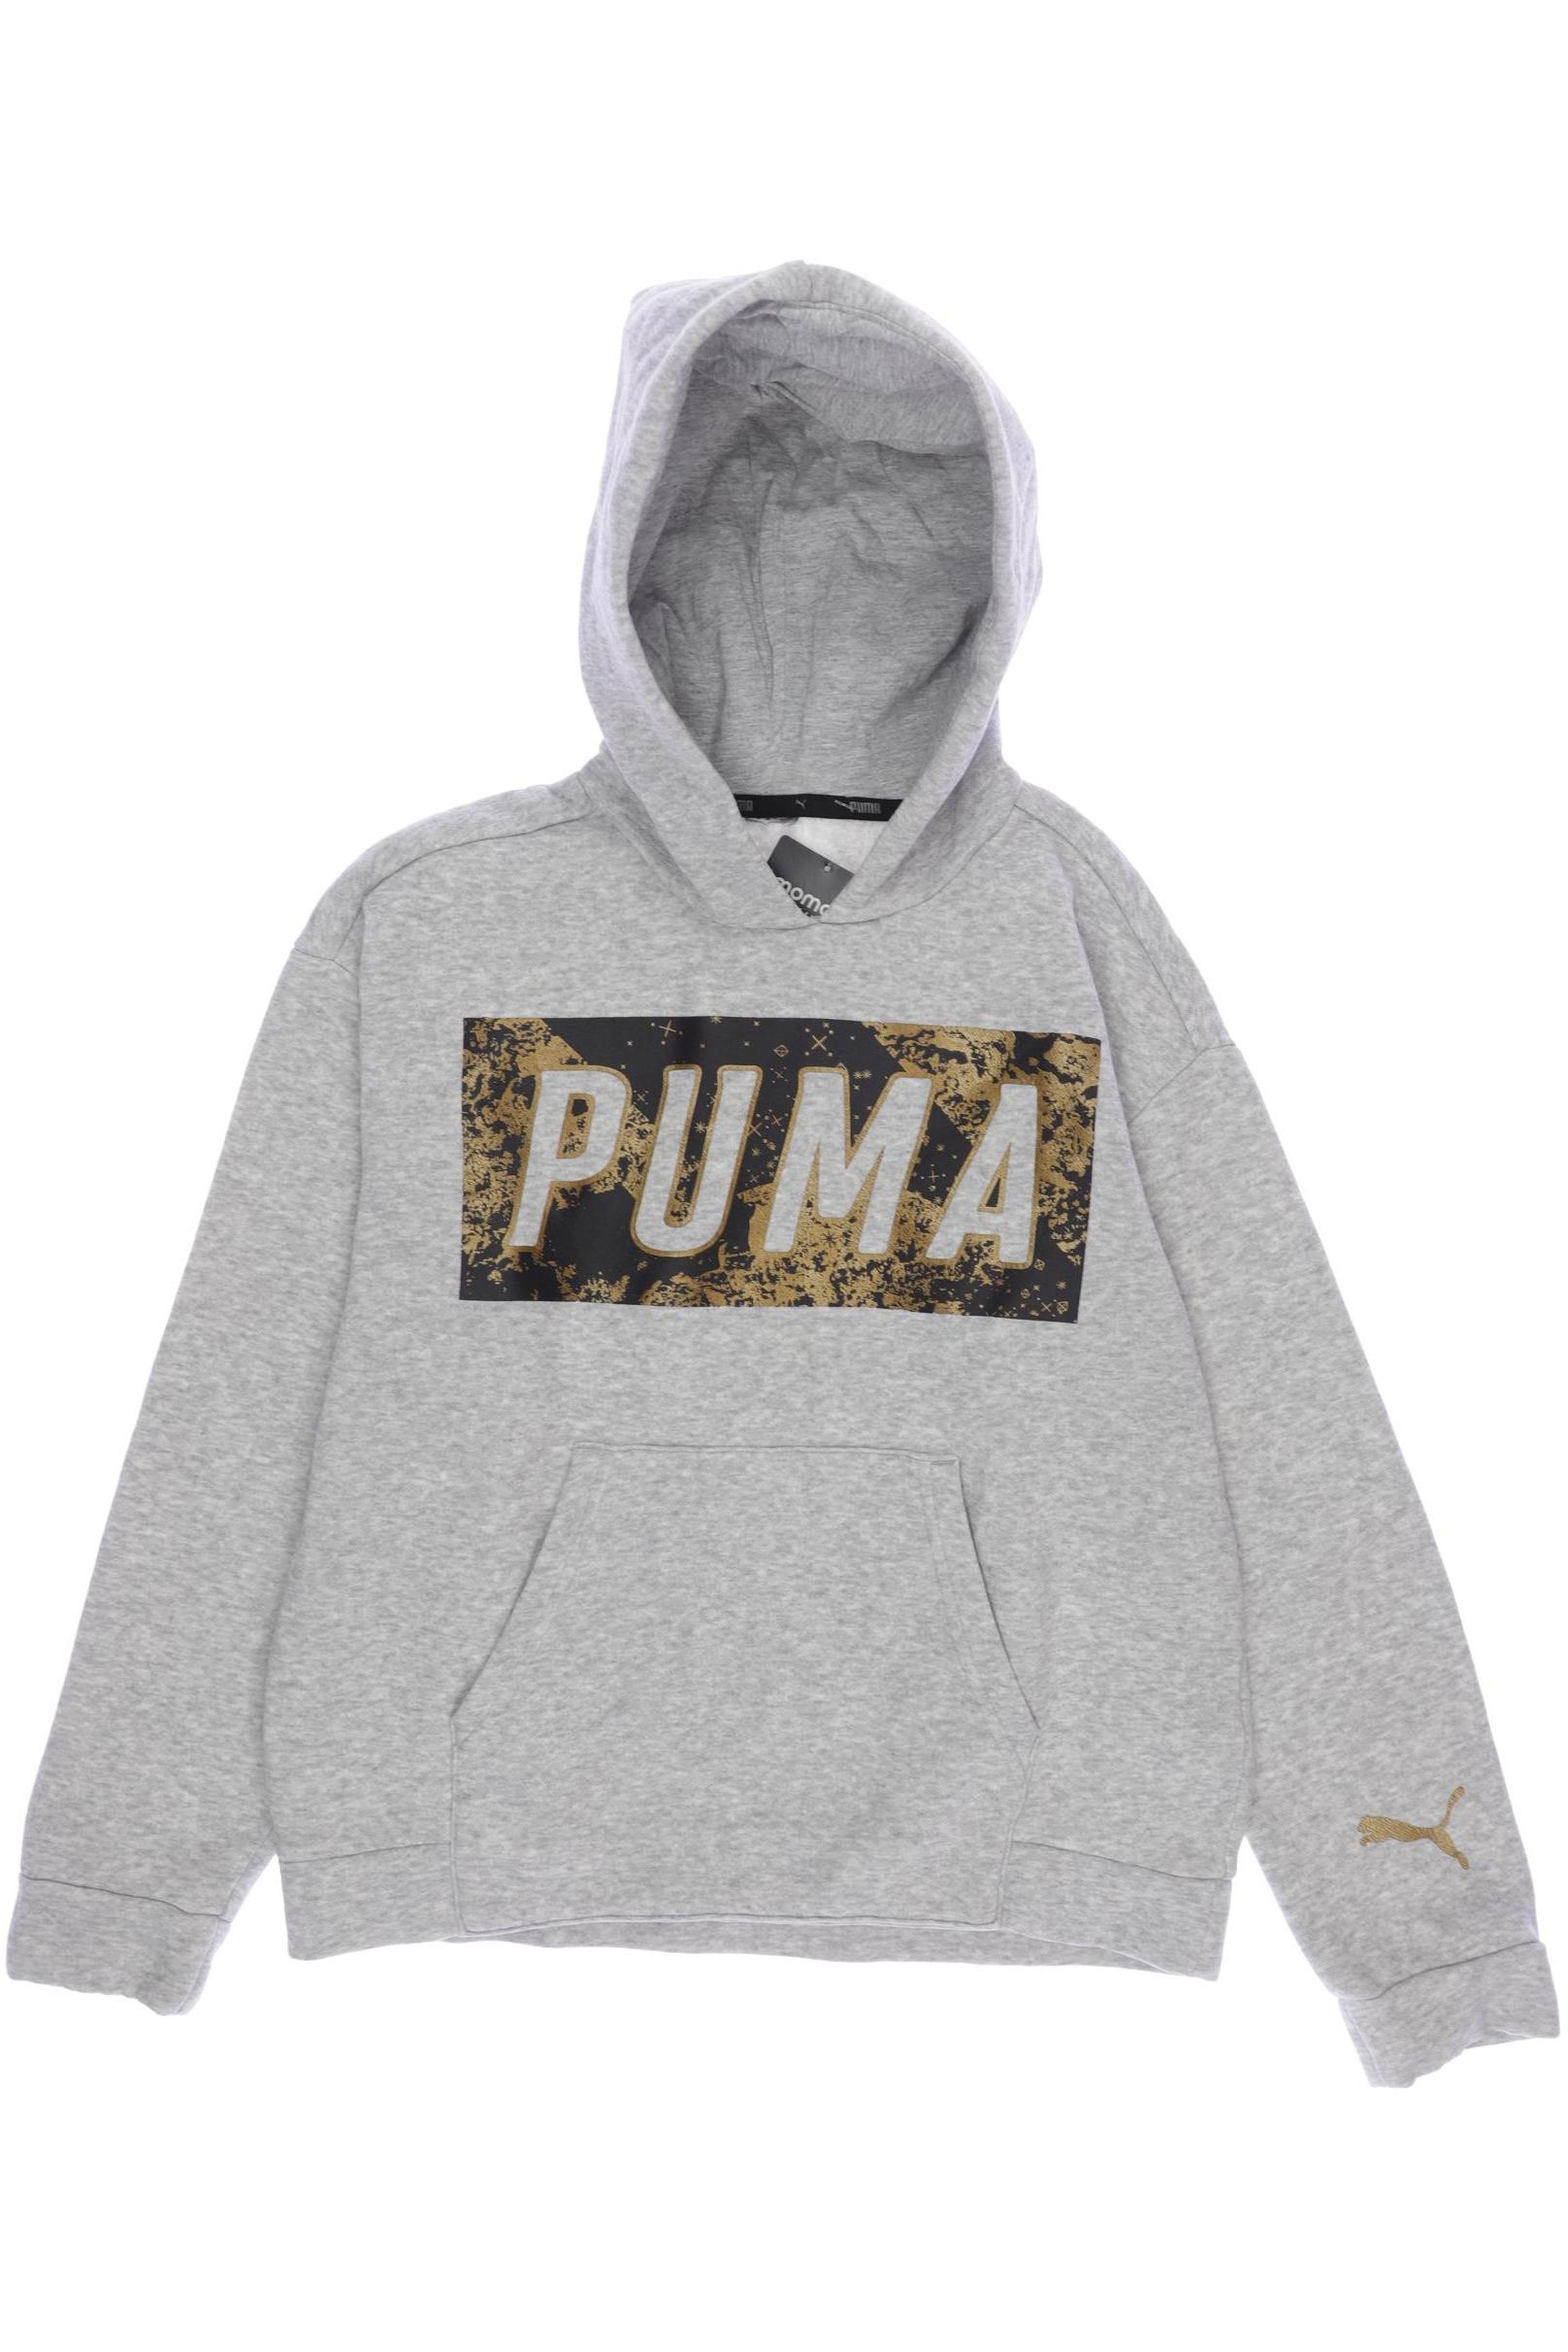 PUMA Mädchen Hoodies & Sweater, grau von Puma